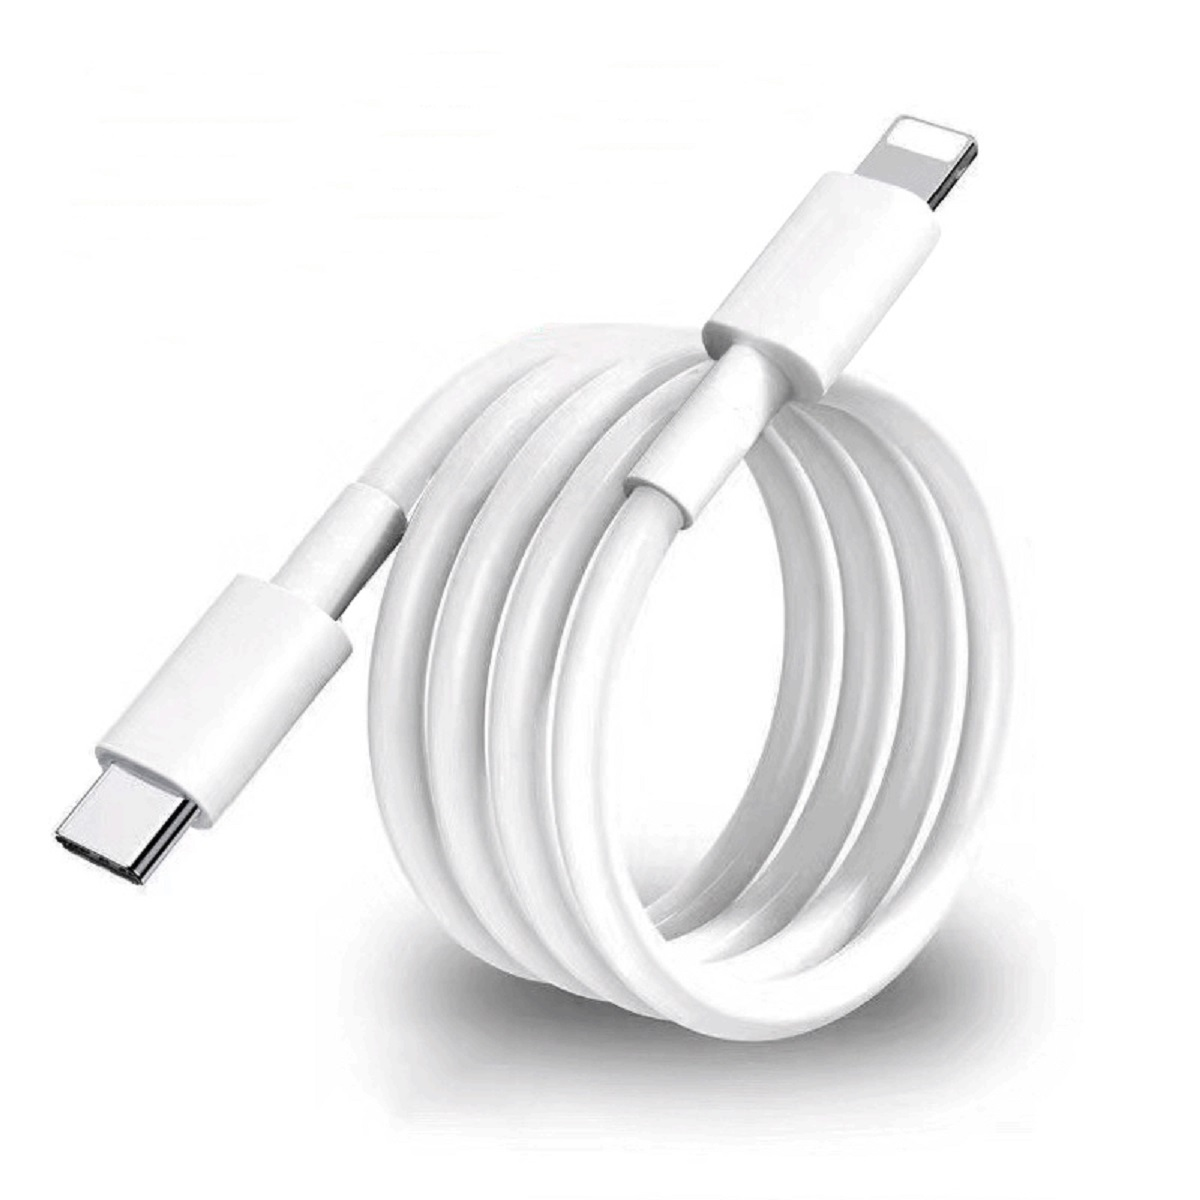 VENTARENT Netzteil 20W USB mit XS, für Apple, X, XR, Ladegerät iPhone Netzteil Weiß SE C 14, Lightning iPhone Ladekabel 11, 13, 20W Apple 12, Ladegerät